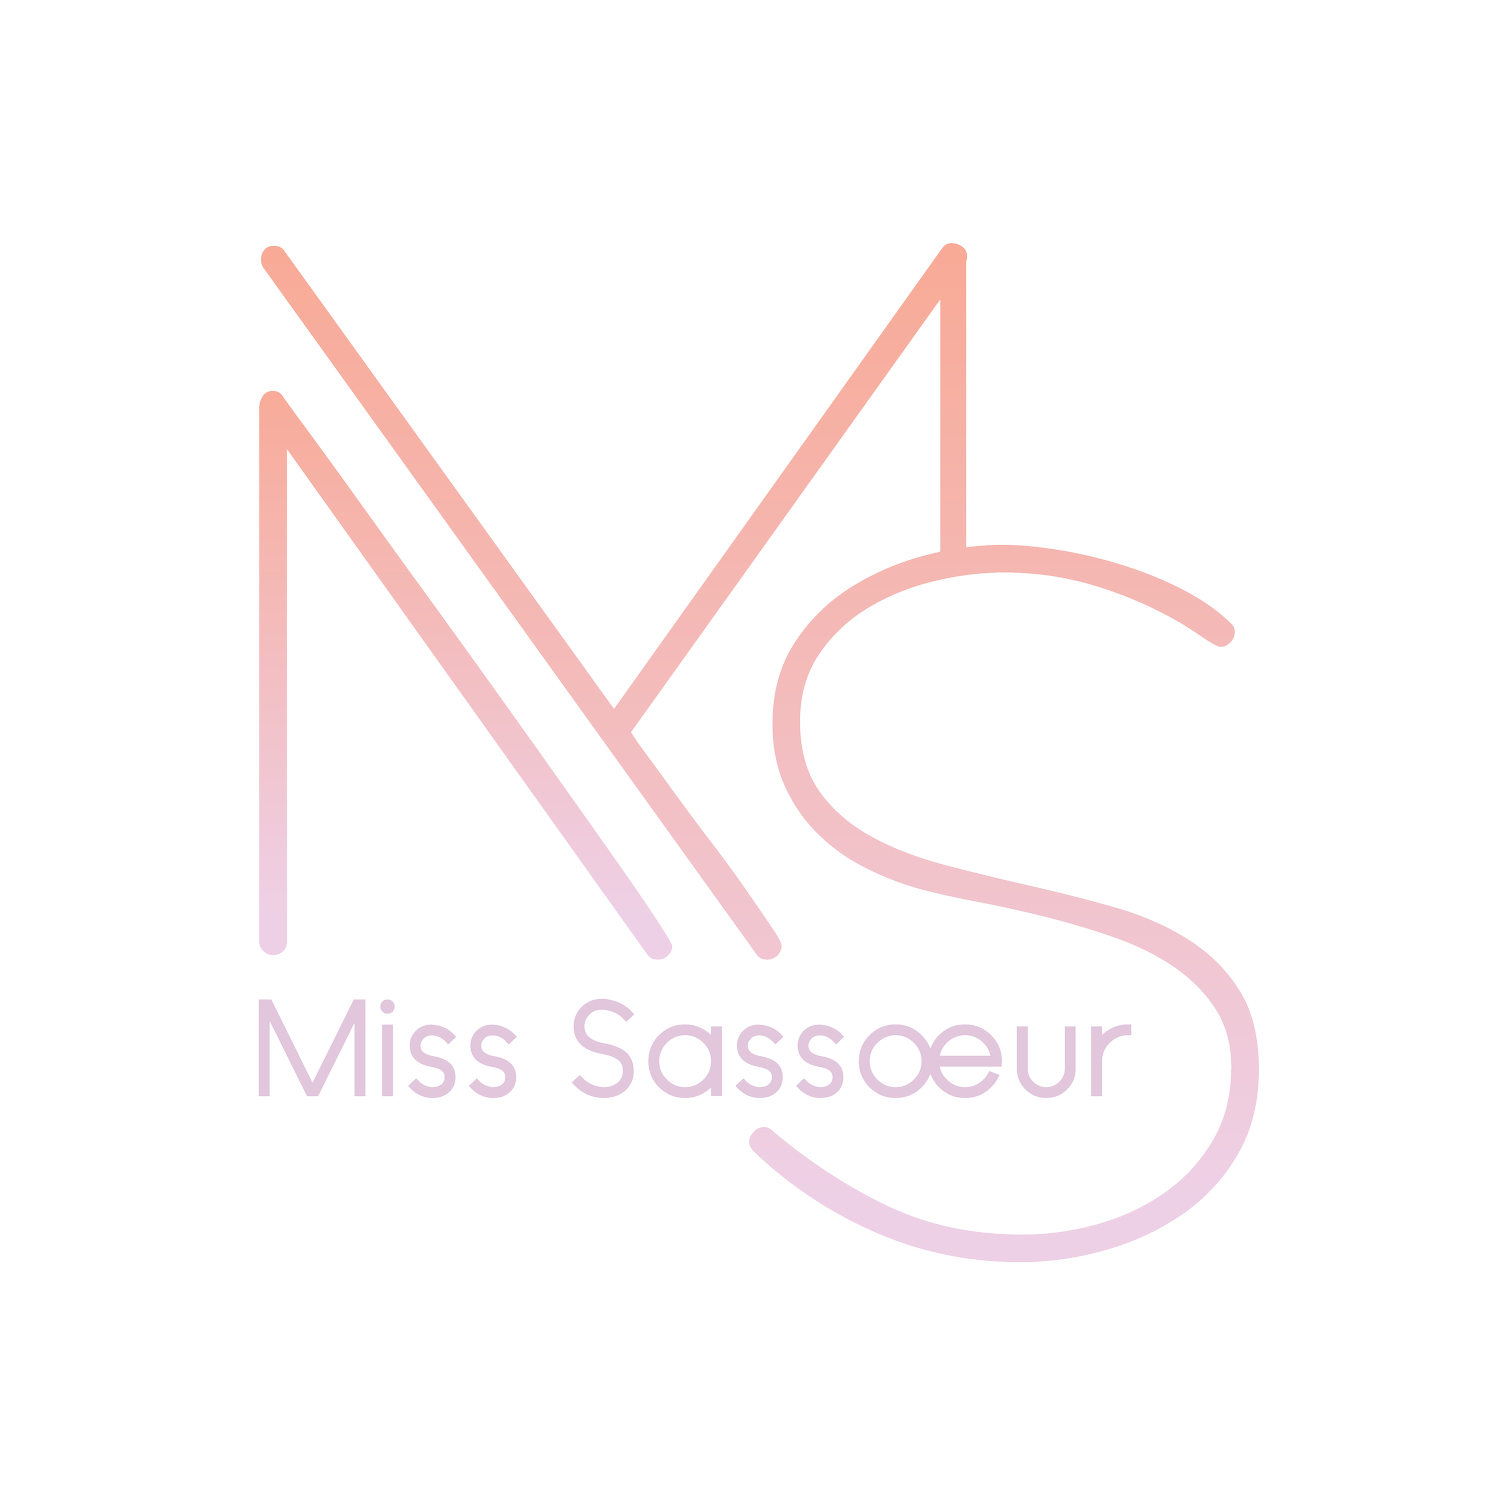 Miss Sassoeur